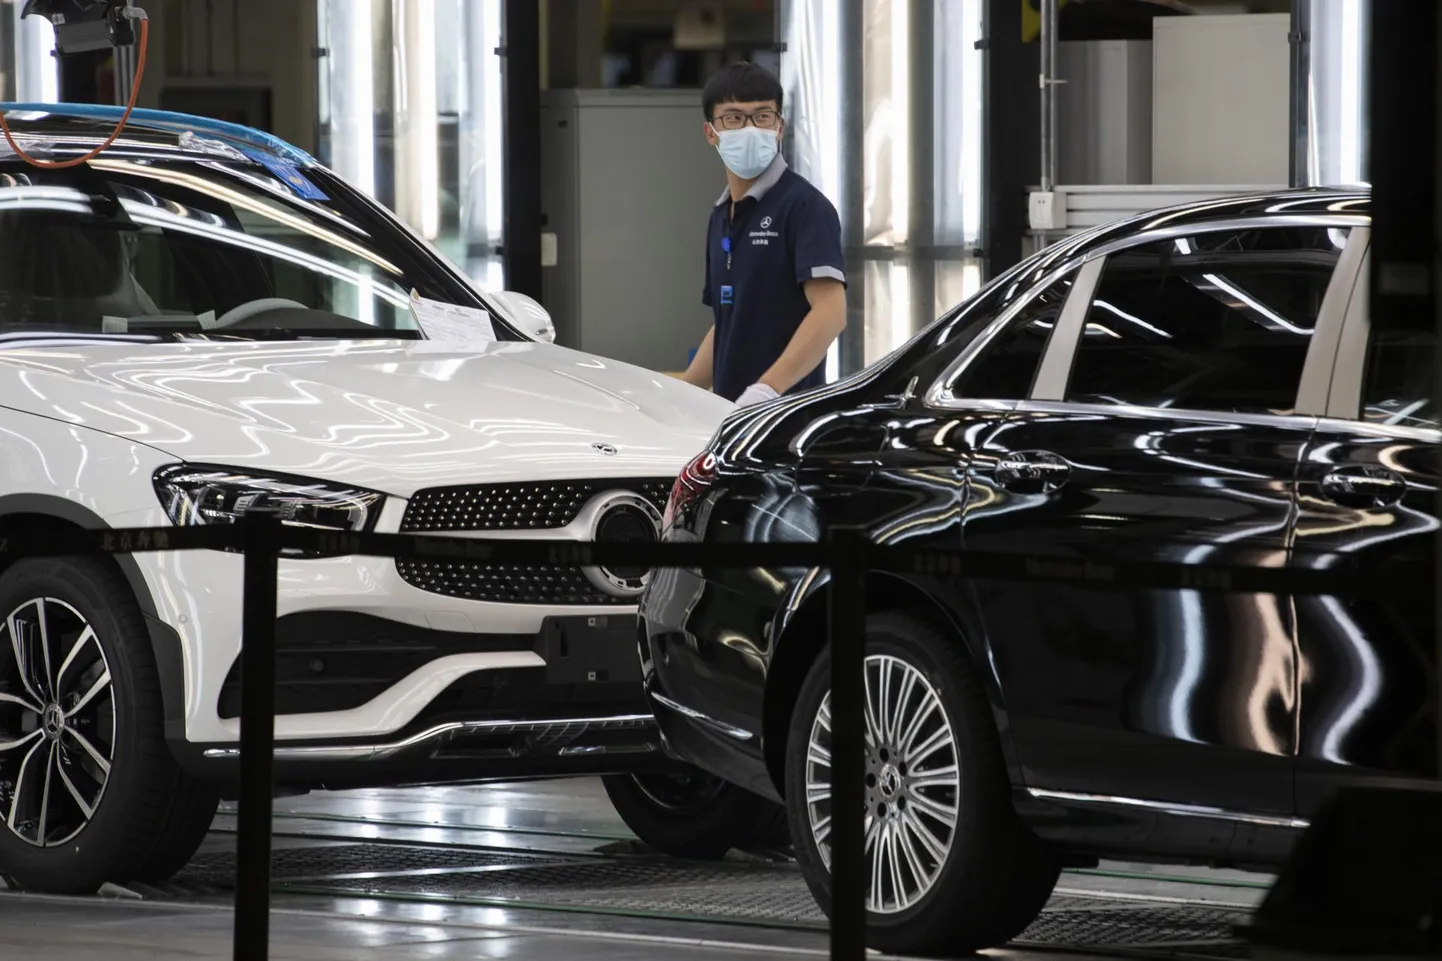 Hiina on uutele sõiduautodele üks olulisemaid sihtturge. Hiinlasest tööline Pekingis Mercedes-Benzi monteerimisliinil.